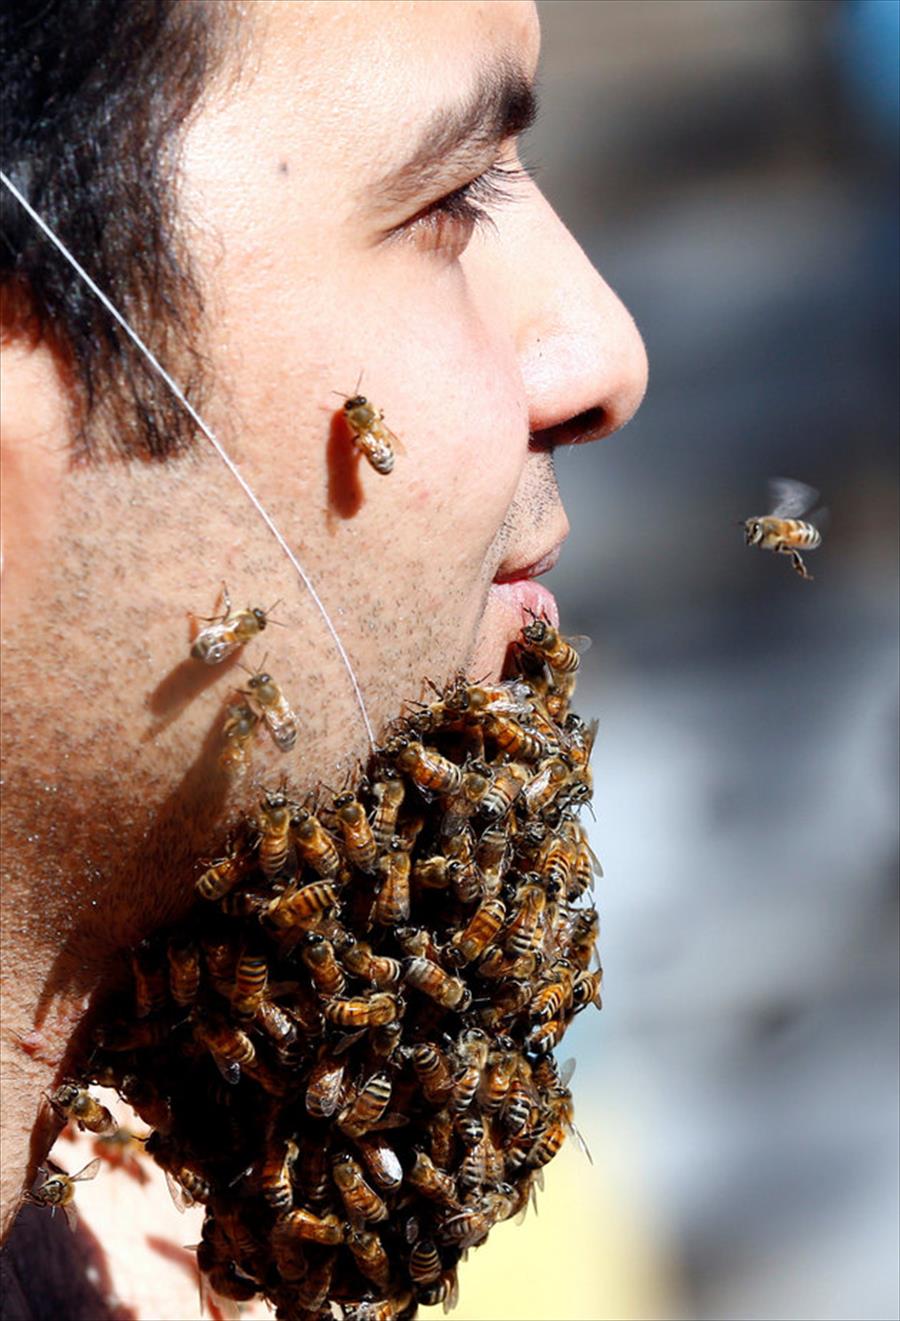 لماذا يتجمع النحل حول ذقن هذا الرجل؟